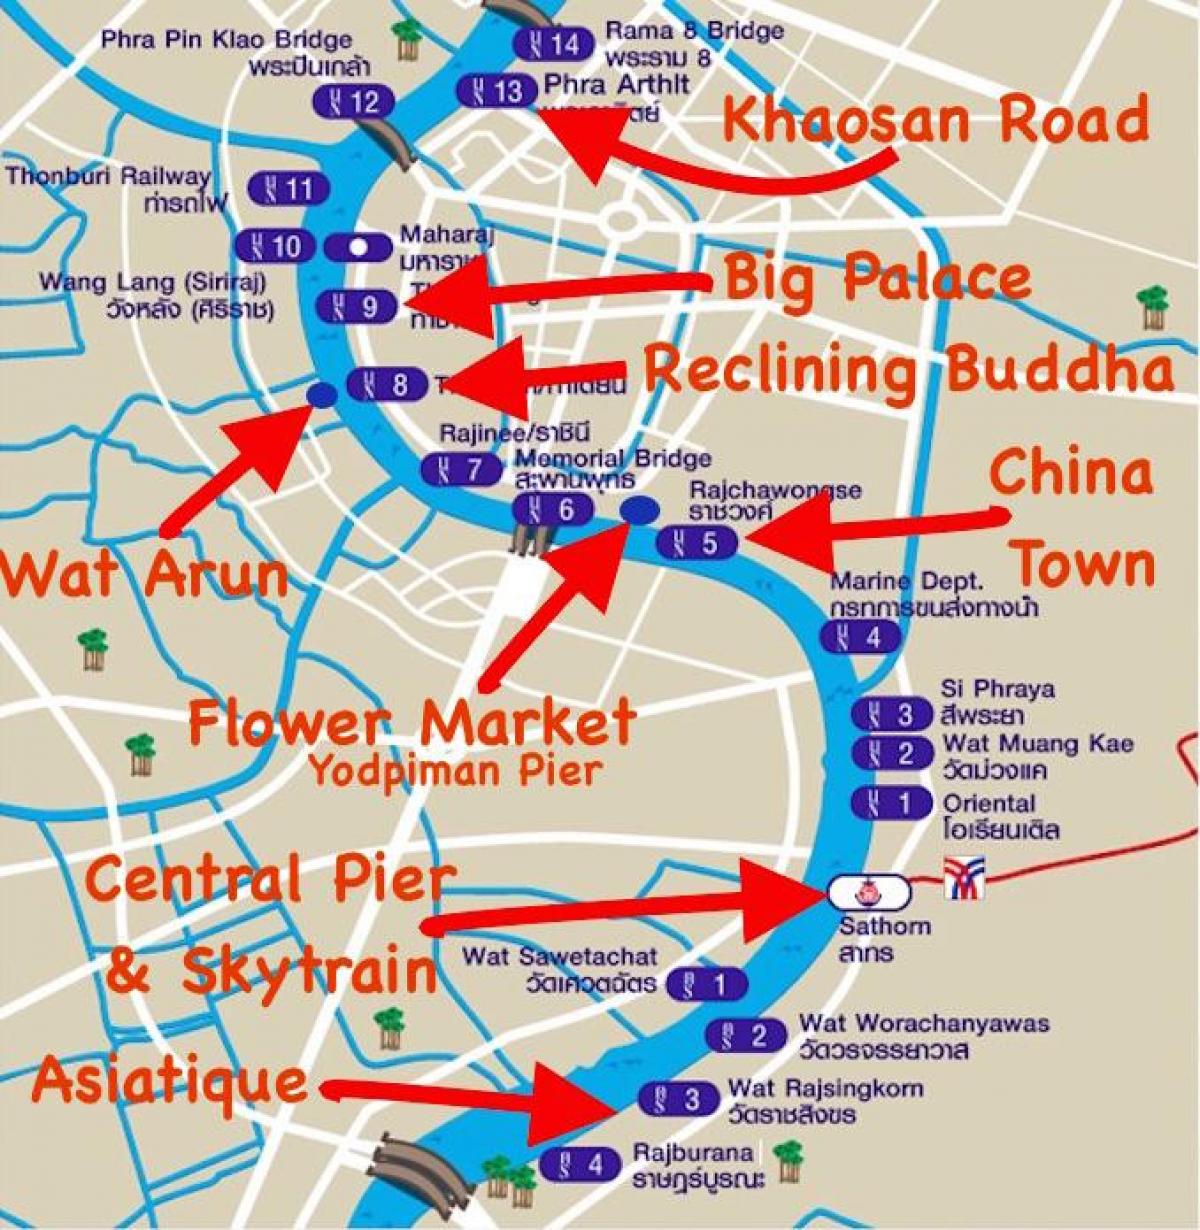 zemljevid bangkok pomol